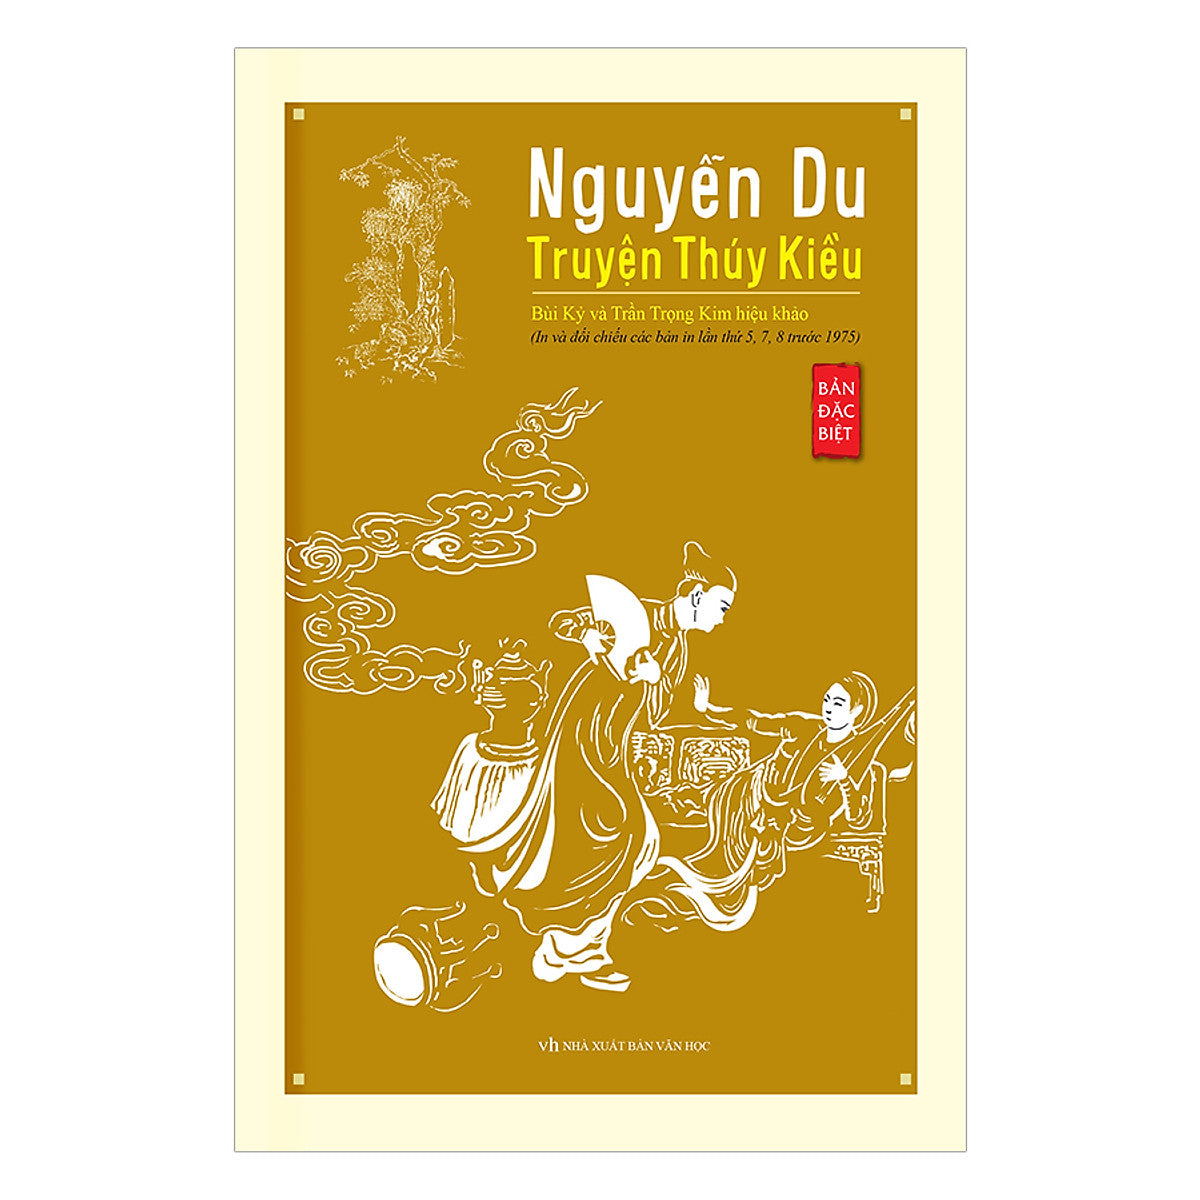 Nguyễn Du - Truyện Thúy Kiều (Bản Đăc Biệt) (Bìa Mềm)